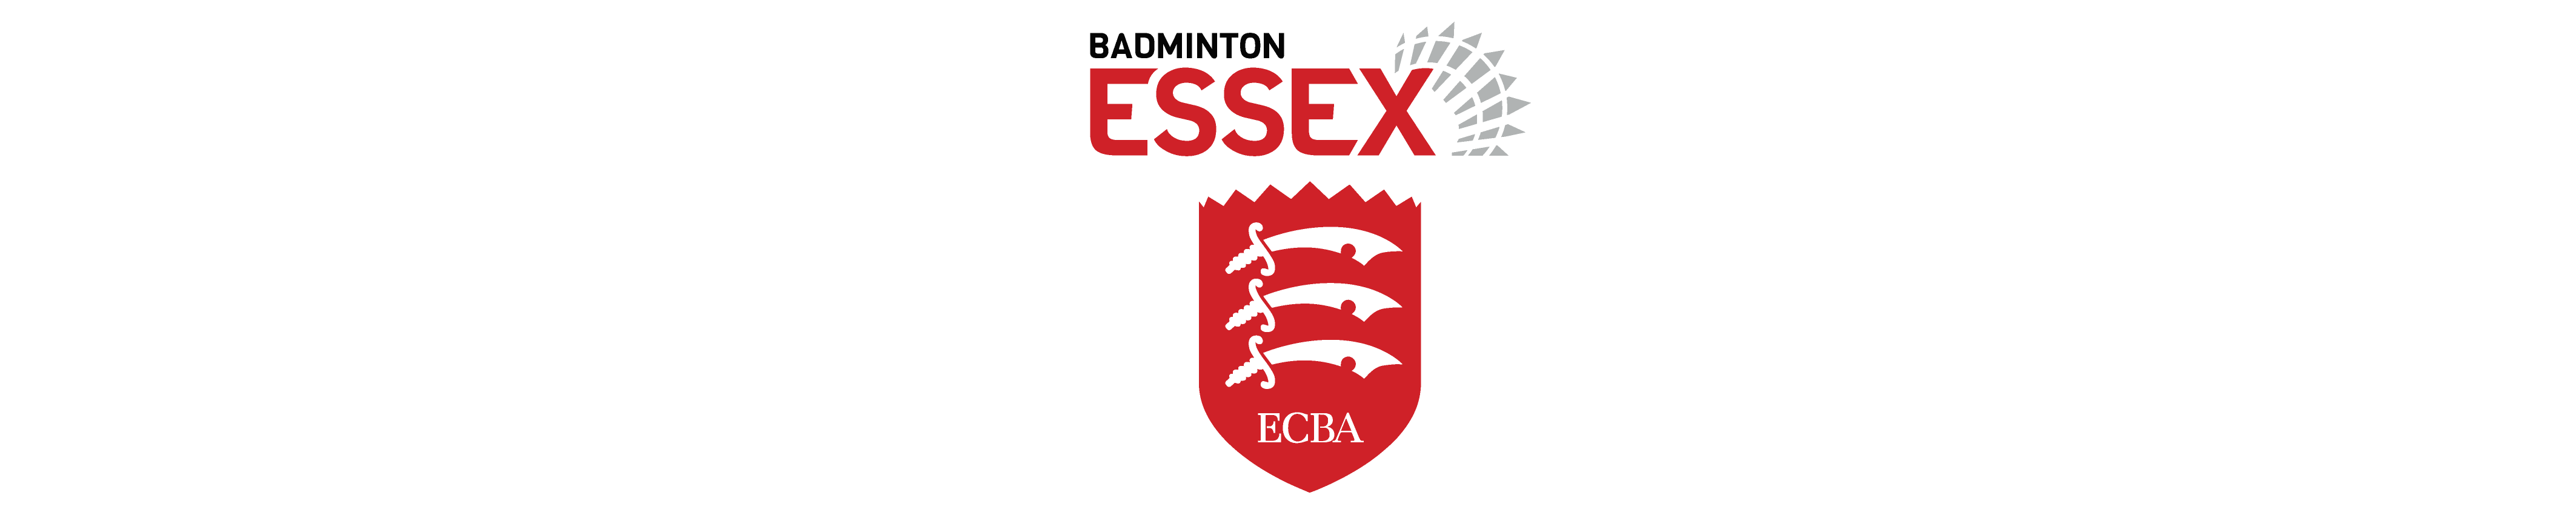 Badminton Essex